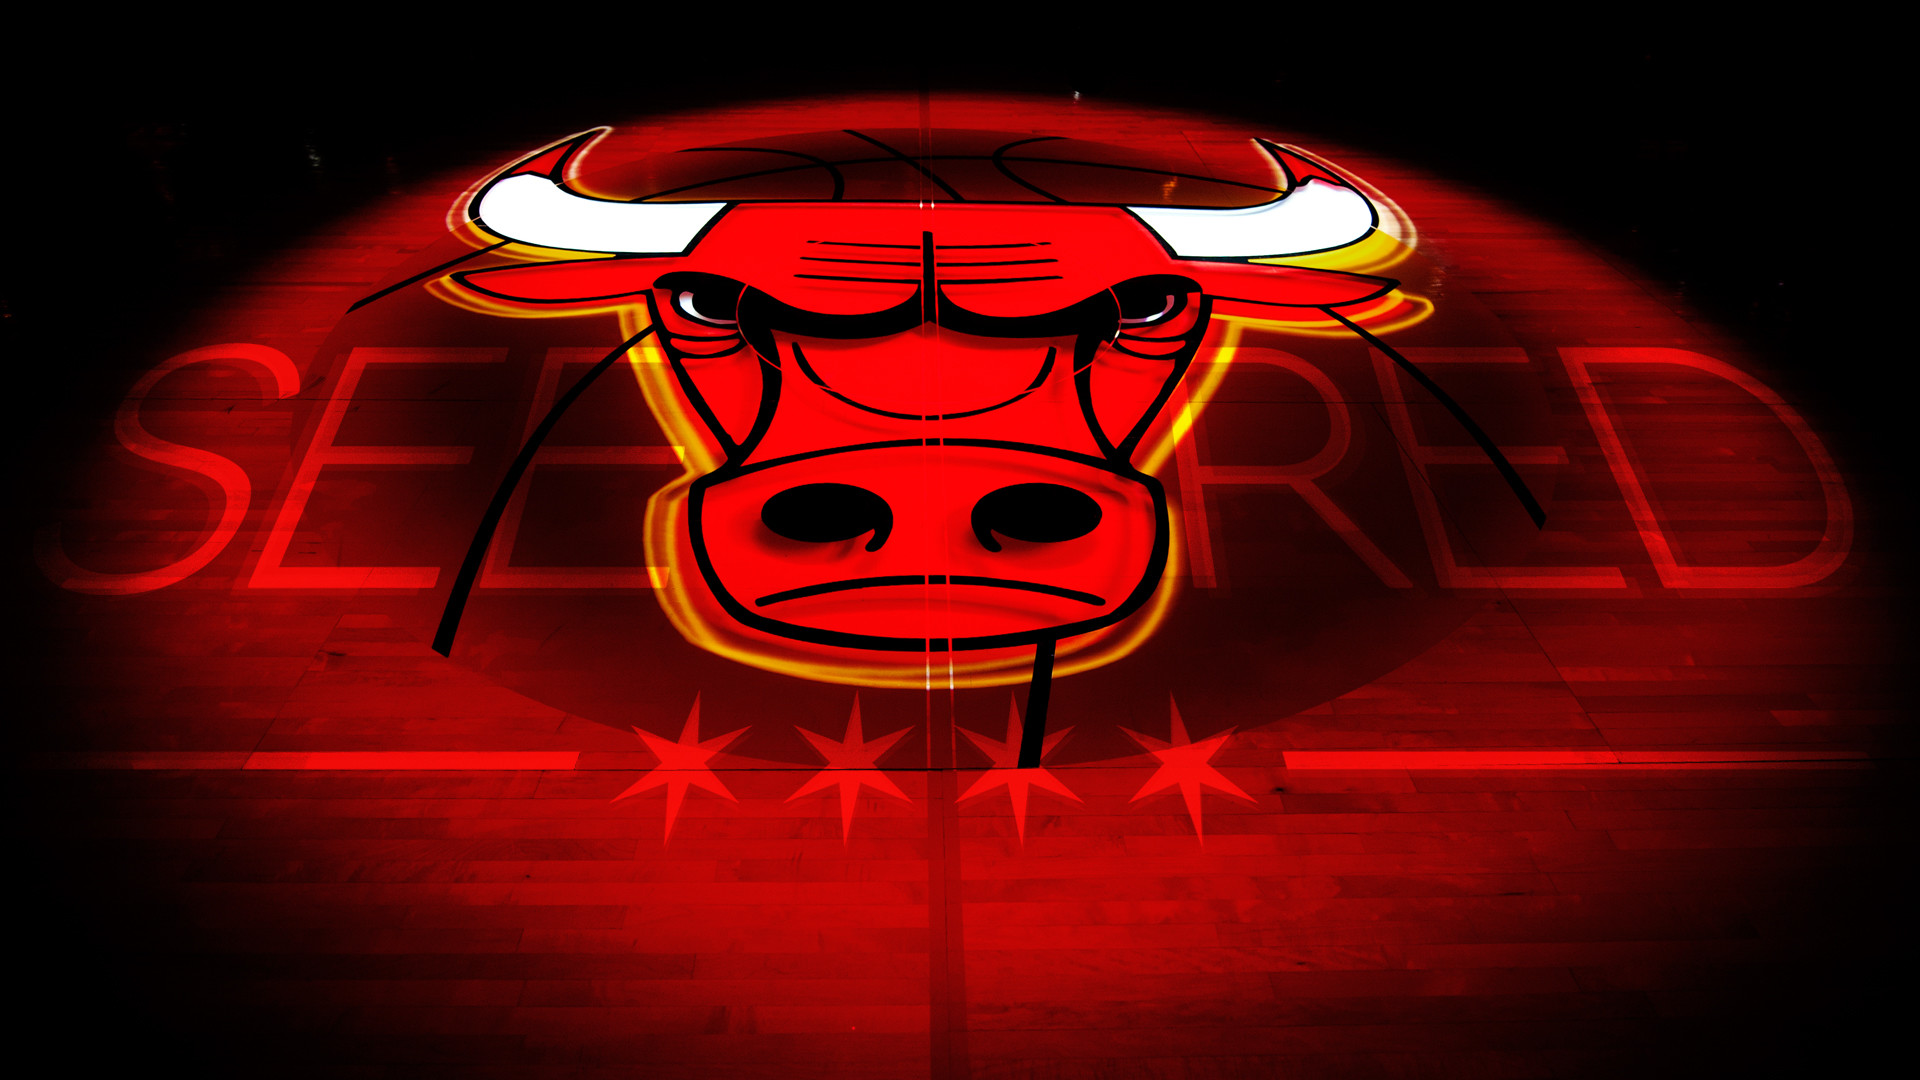 Bulls desktop clipart